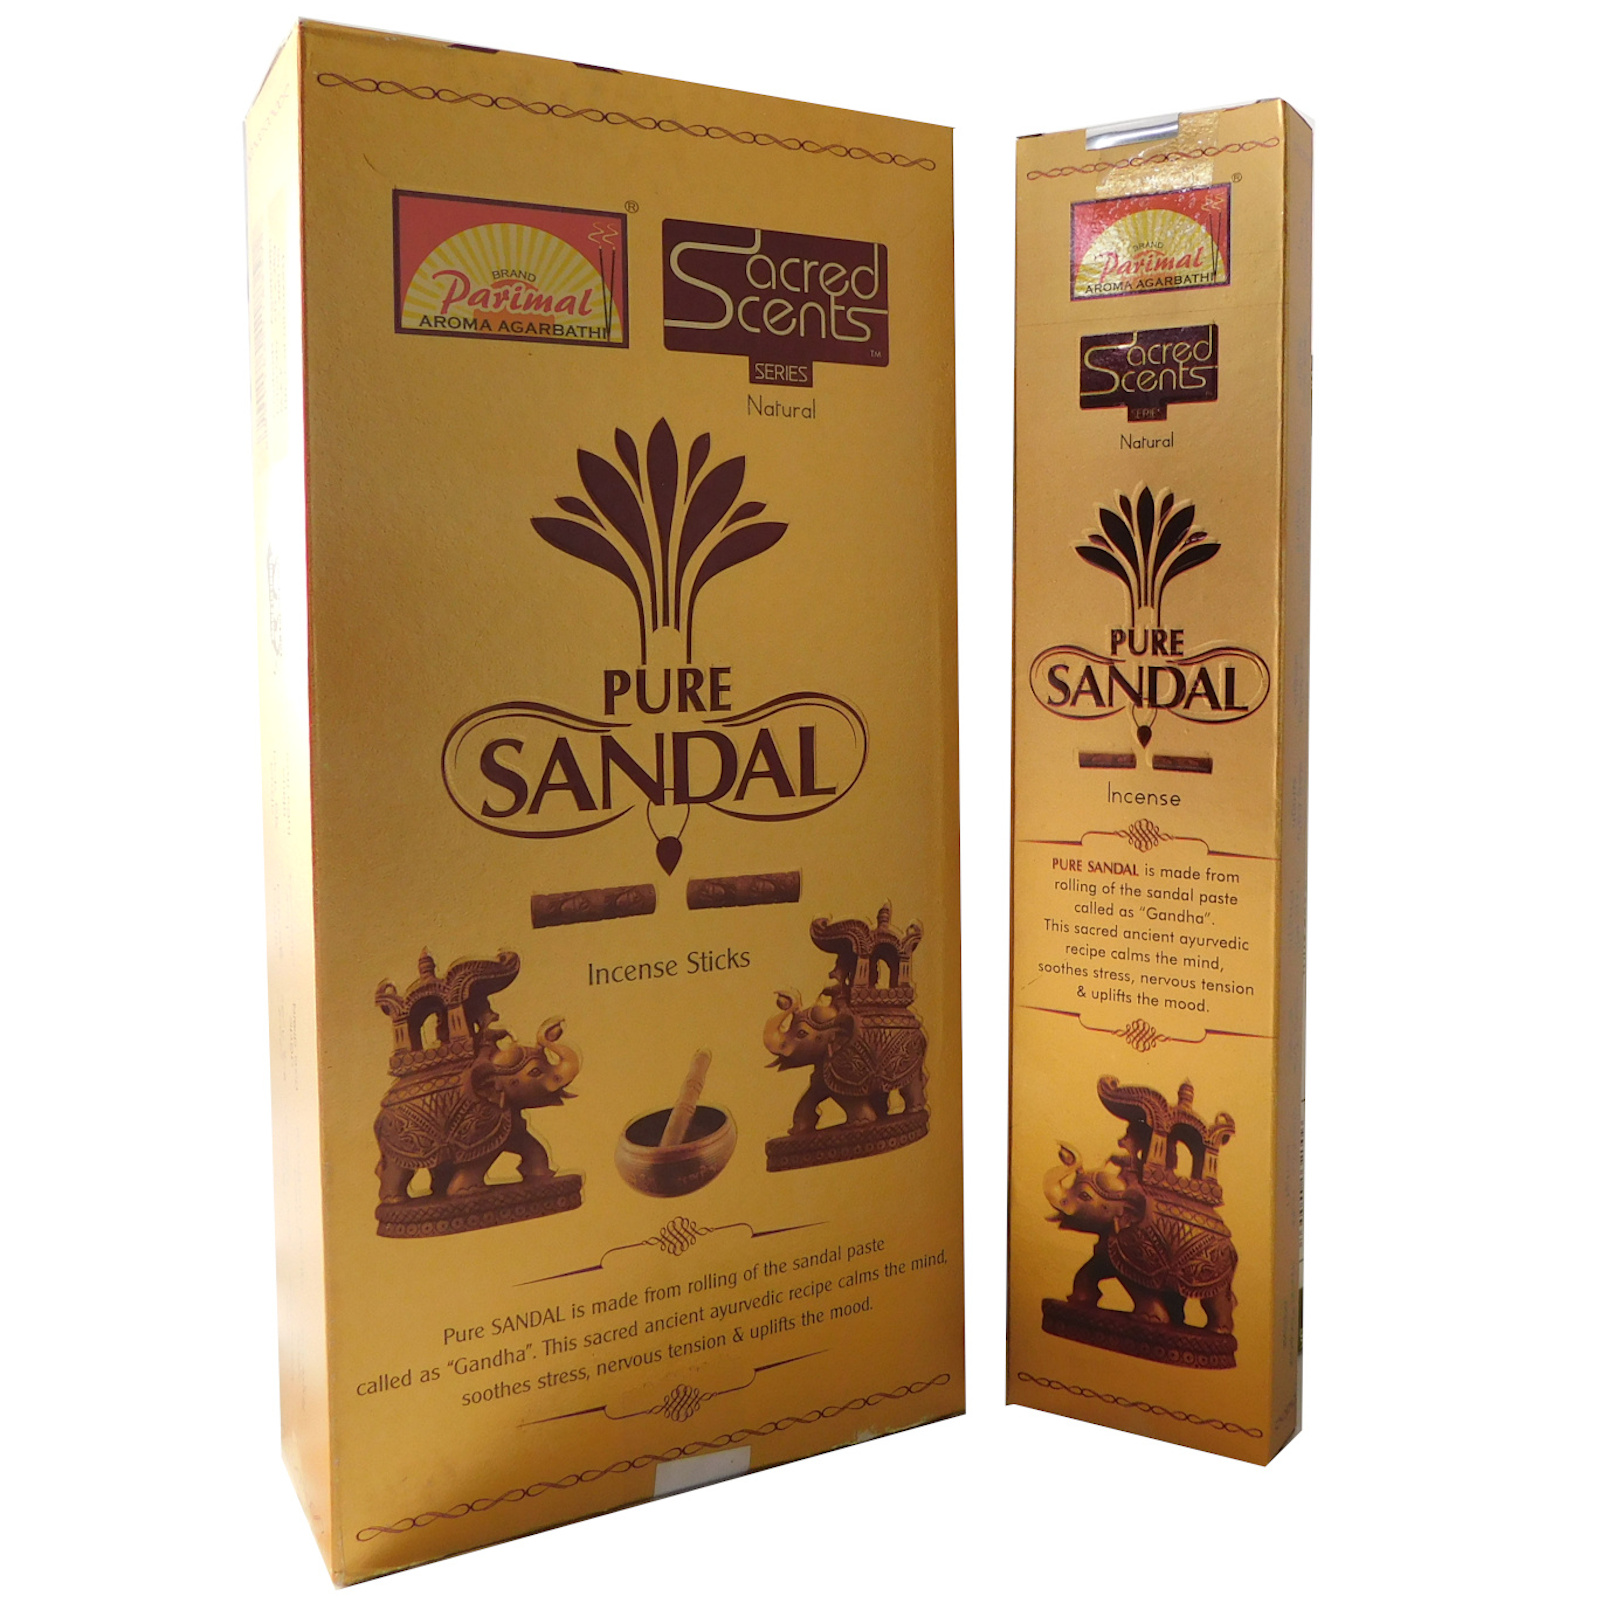 Räucherstäbchen Parimal Sacred Scents Pure Sandal Premium Masala Sticks Box mit 6 Packungen